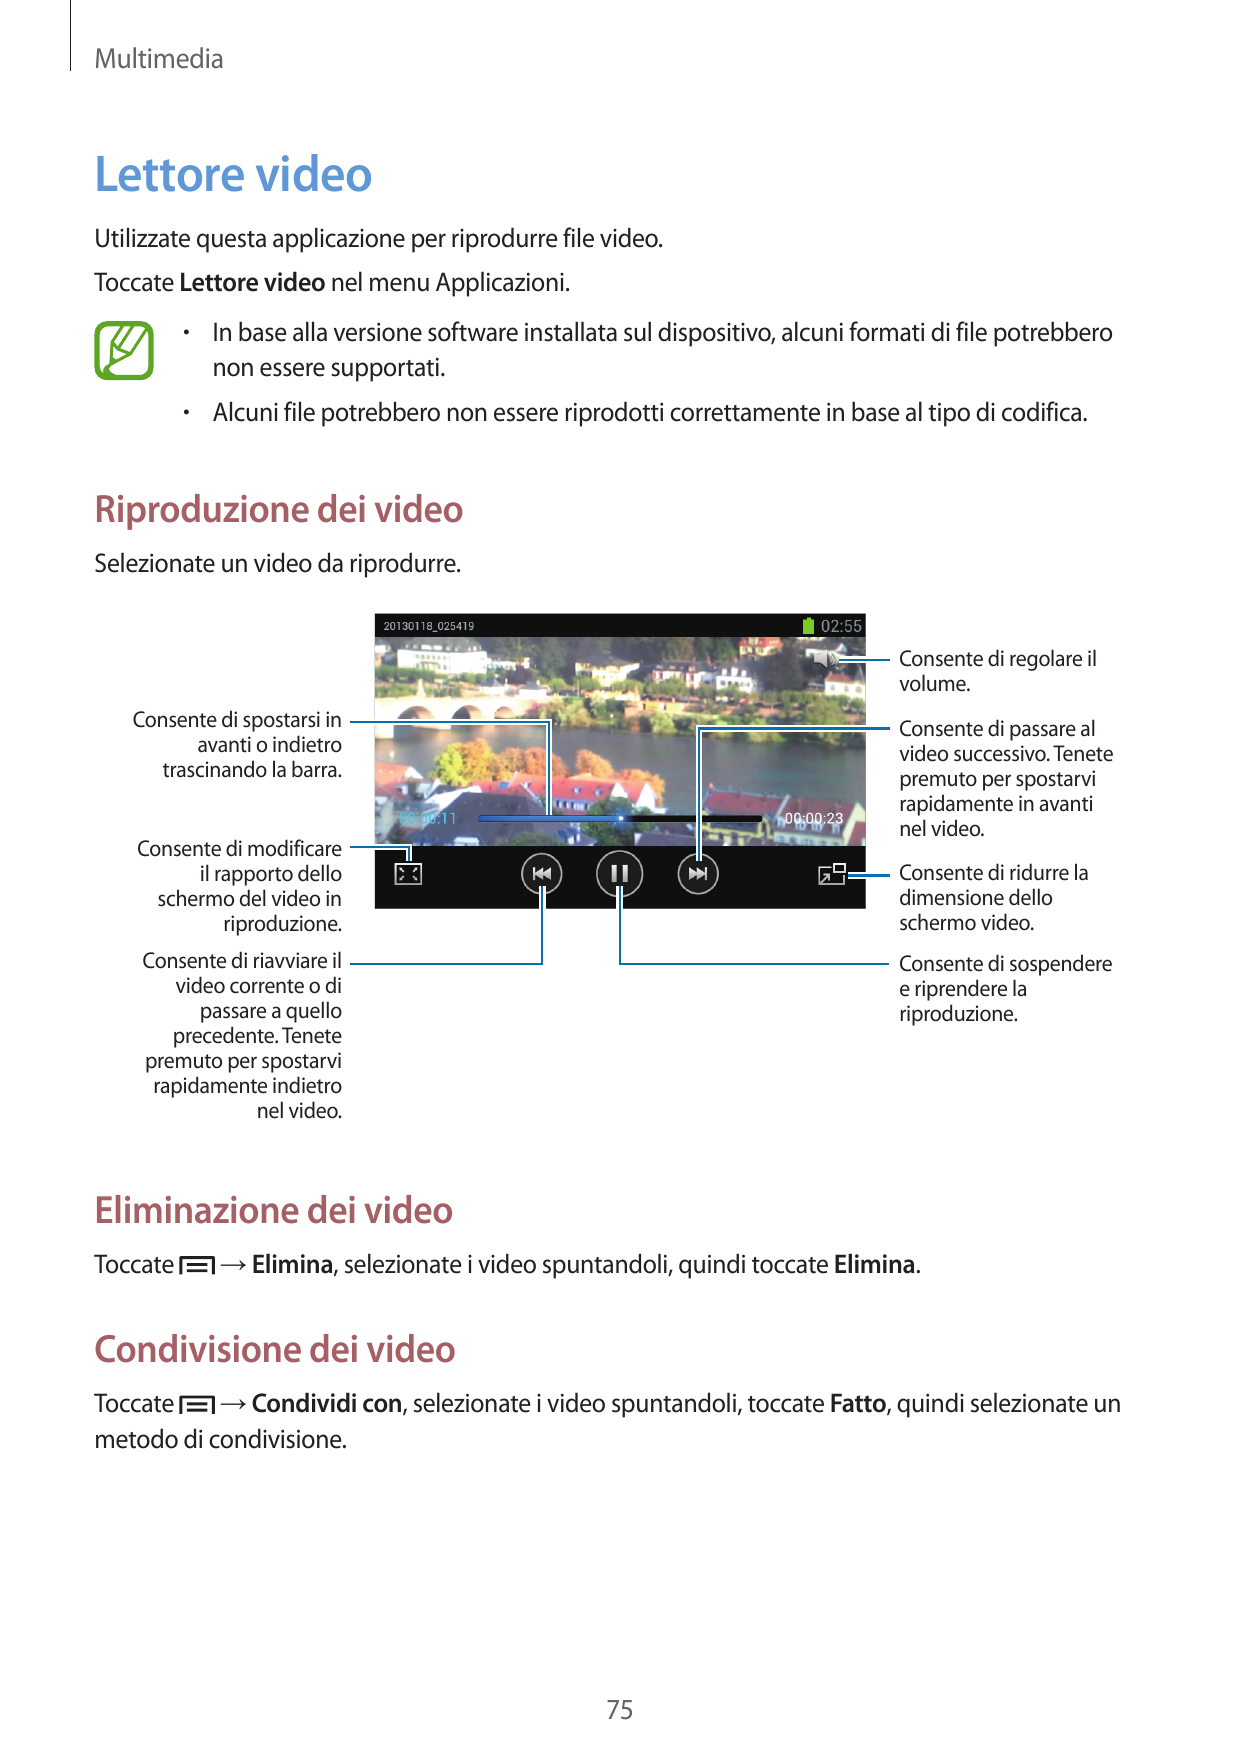 MultimediaLettore videoUtilizzate questa applicazione per riprodurre file video.Toccate Lettore video nel menu Applicazioni.• In